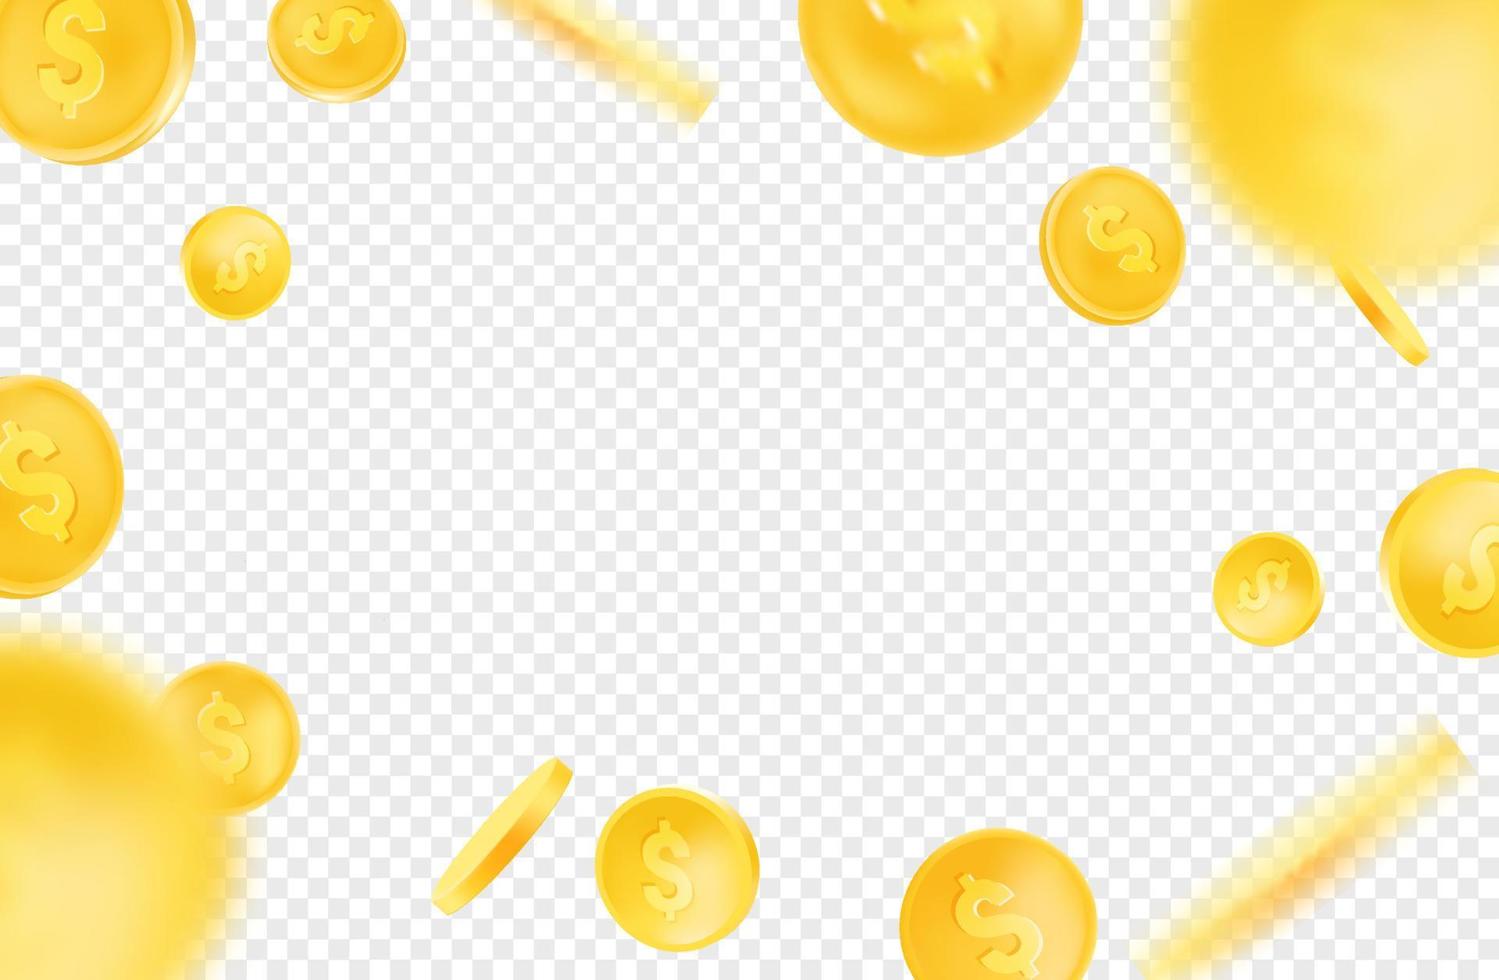 esplosione radiale di monete d'oro. oggetti vettoriali su sfondo trasparente